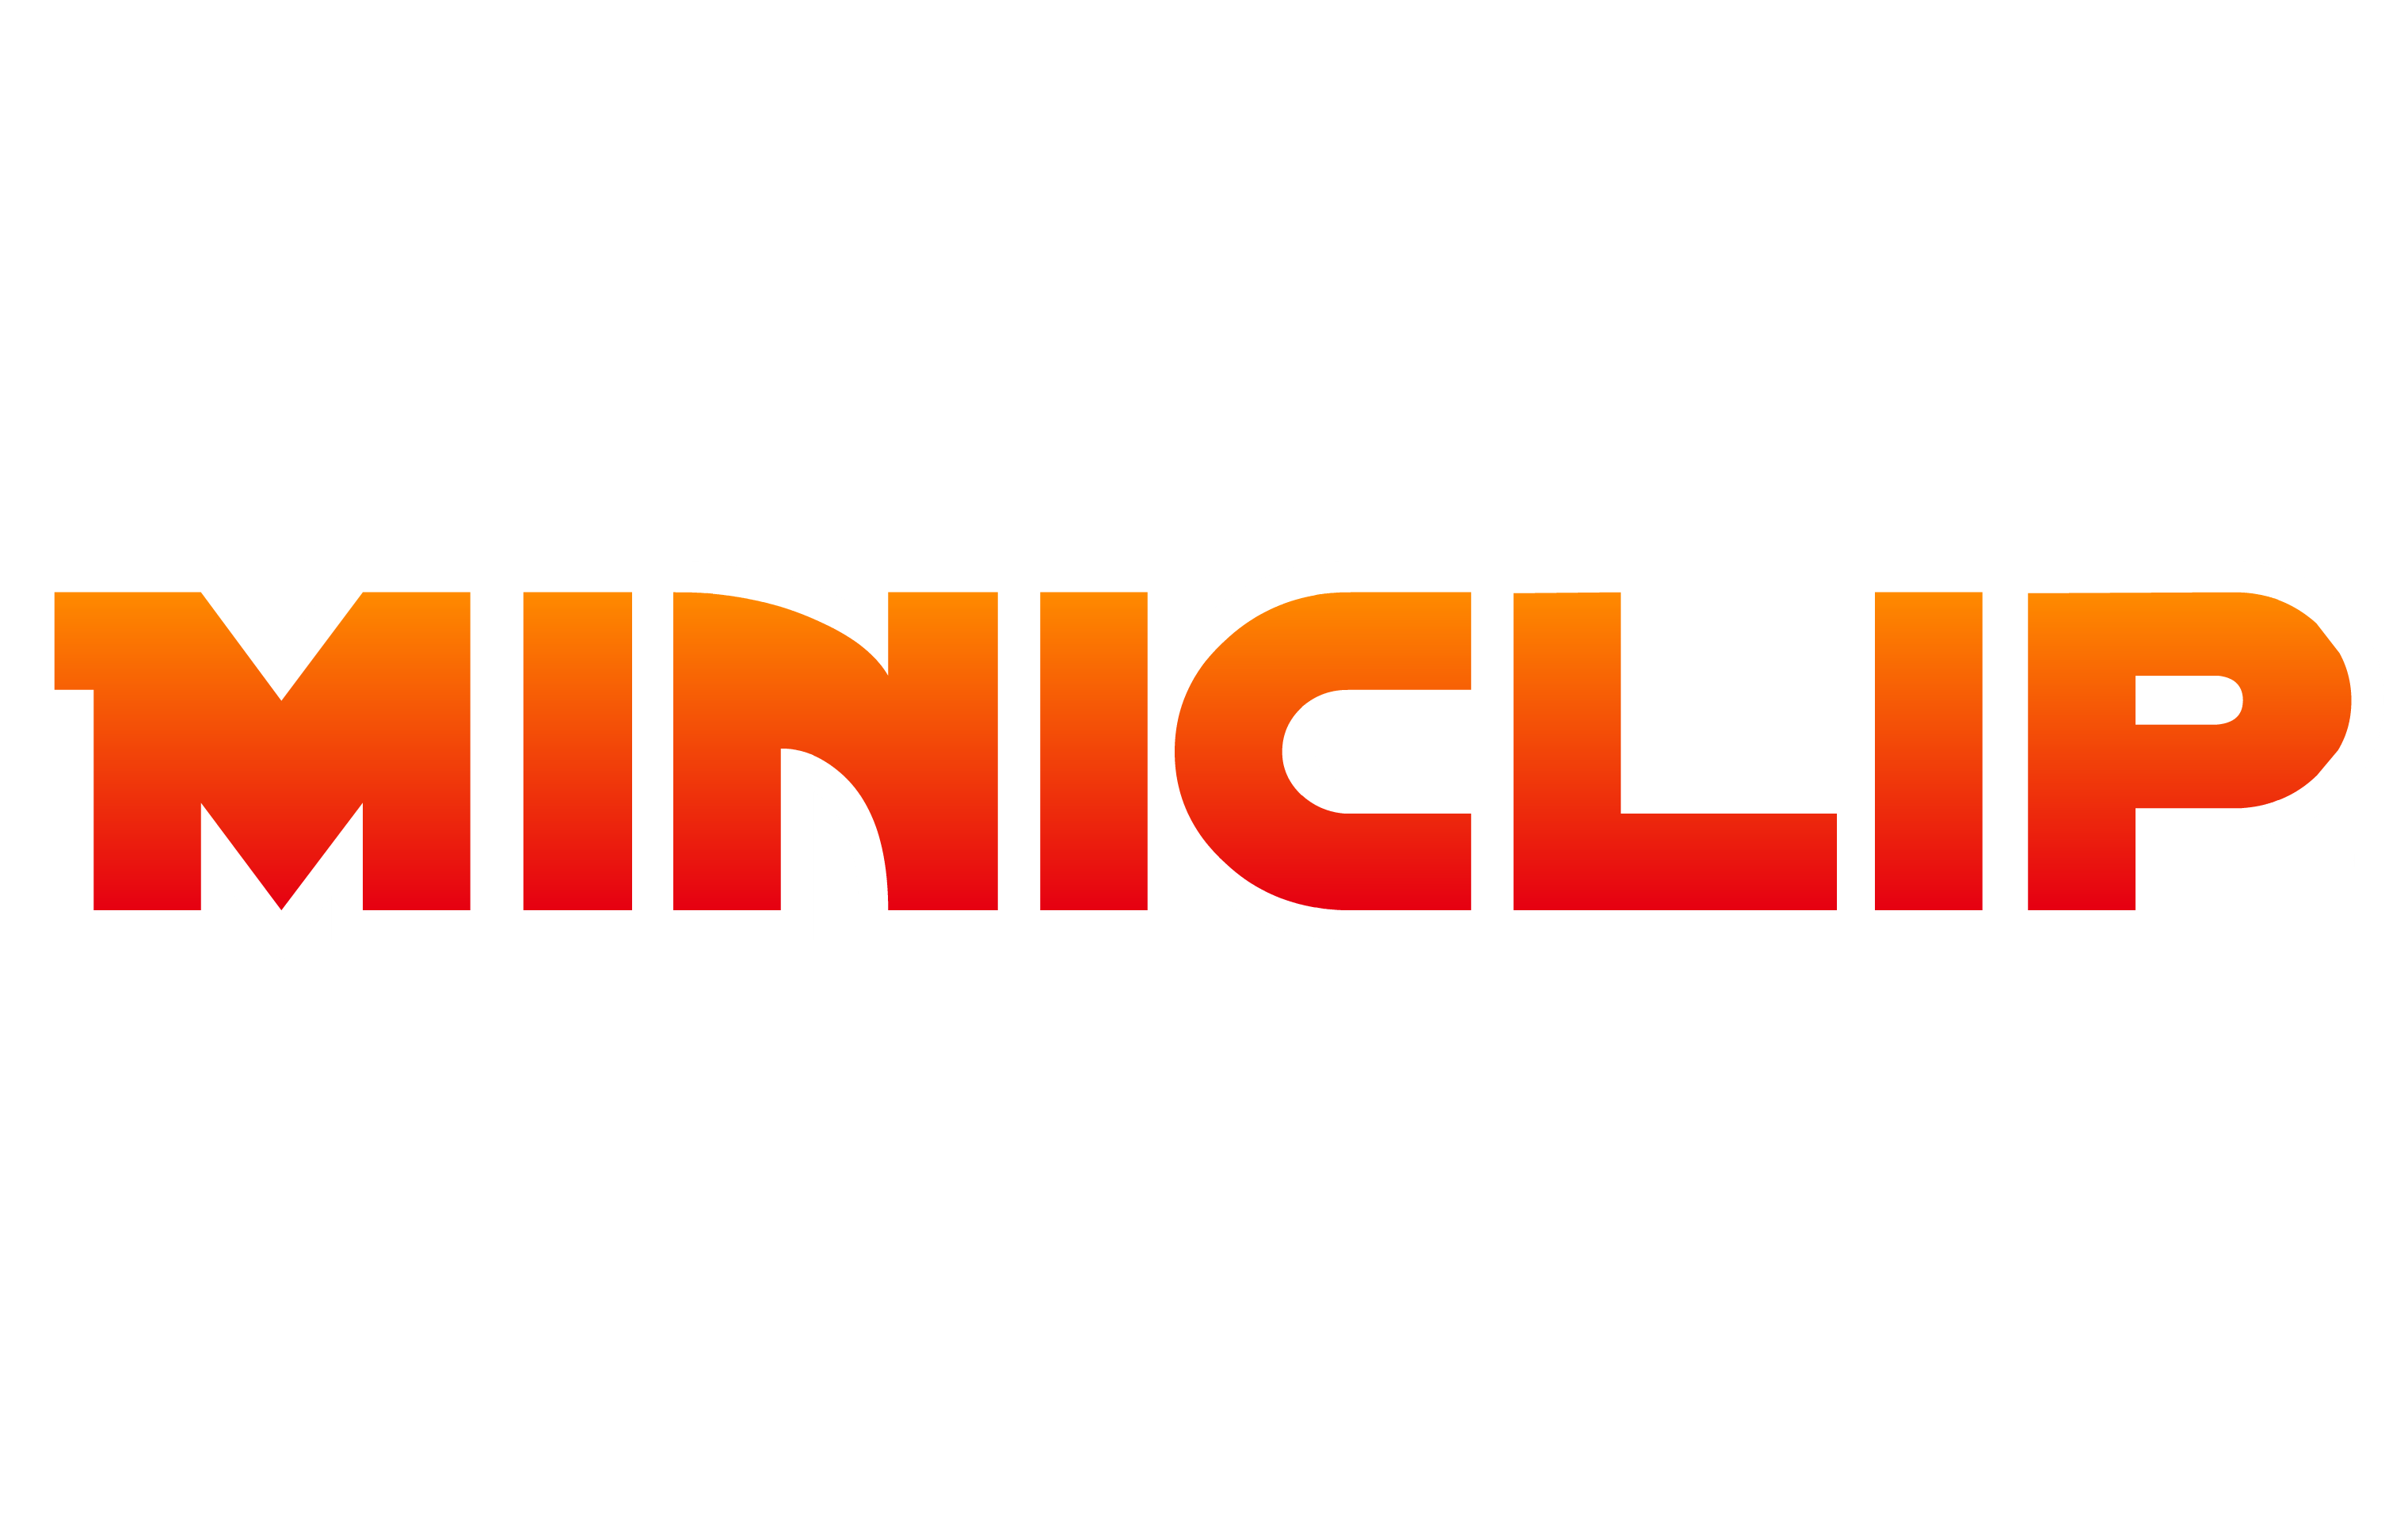 Miniclip Logo photo - 1